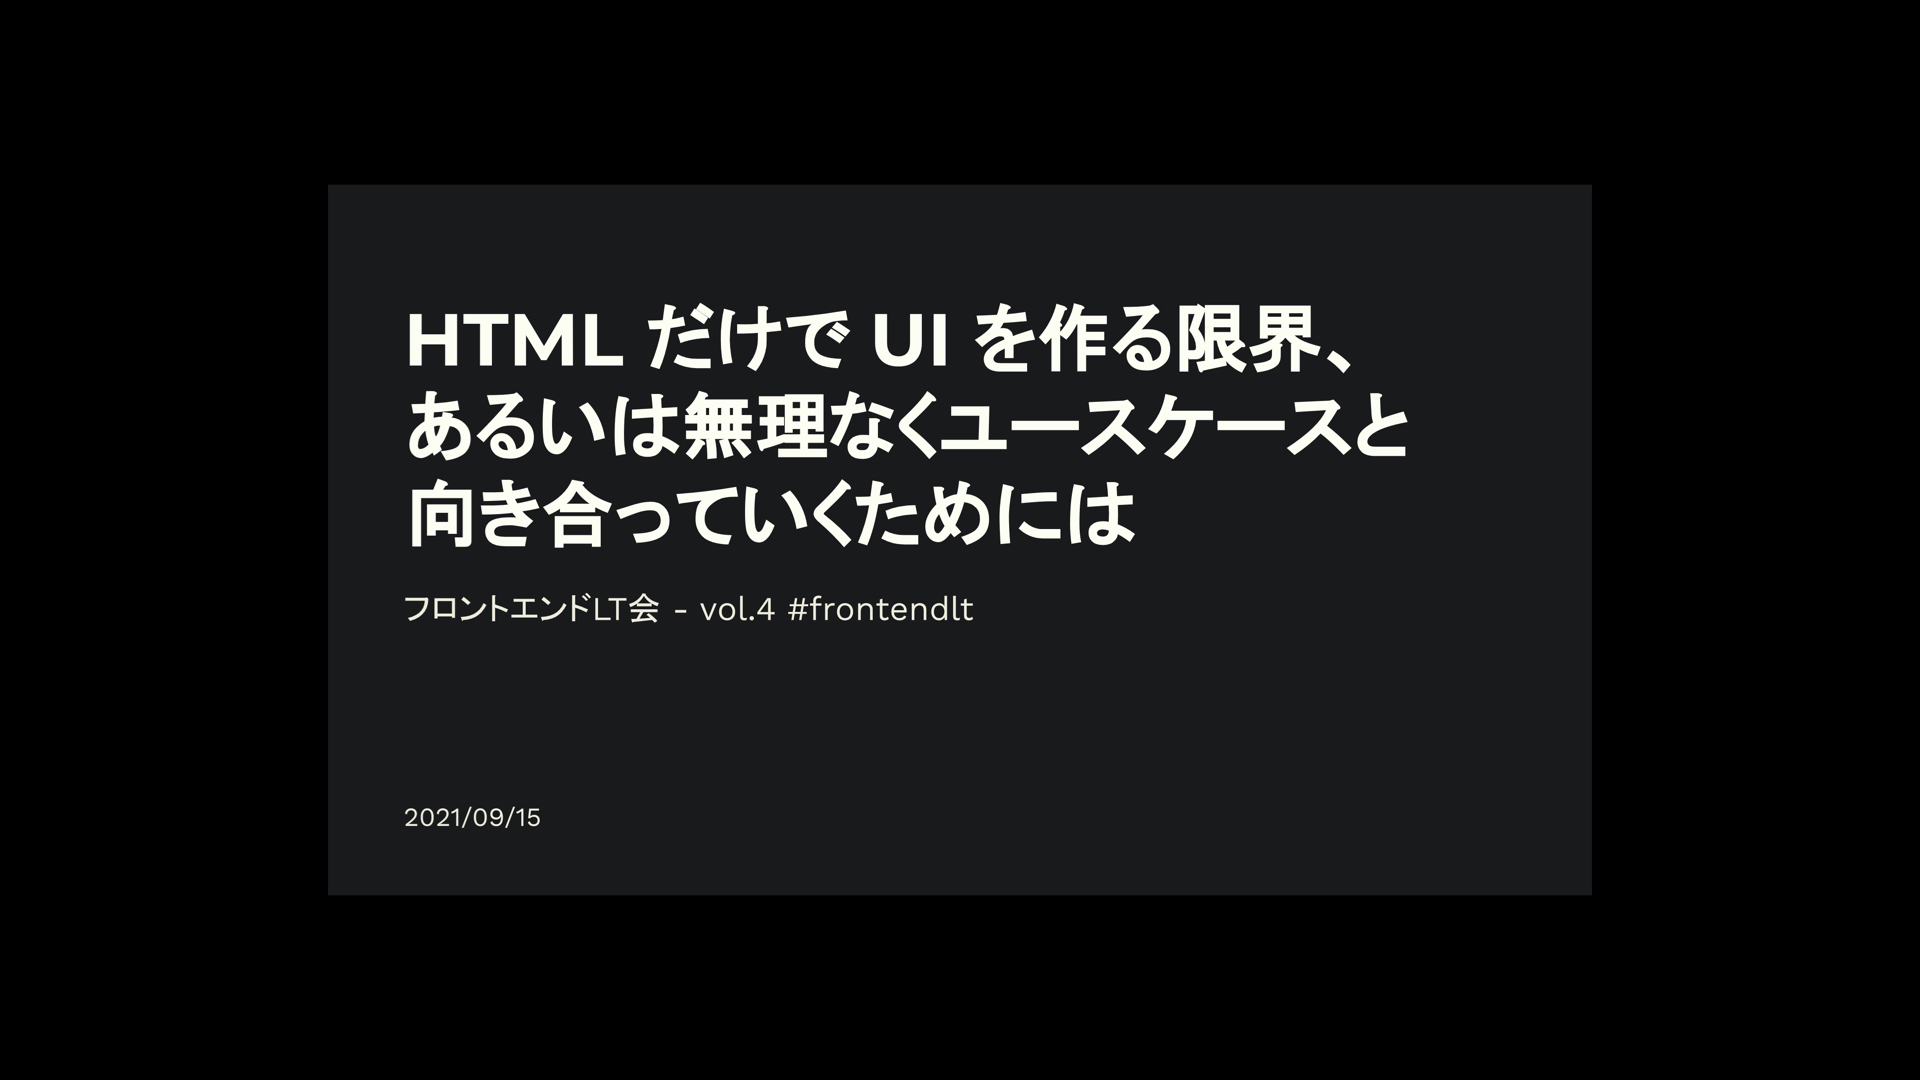 「HTML だけで UI を作る限界、あるいは無理なくユースケースと向き合っていくためには」発表タイトルのスライド